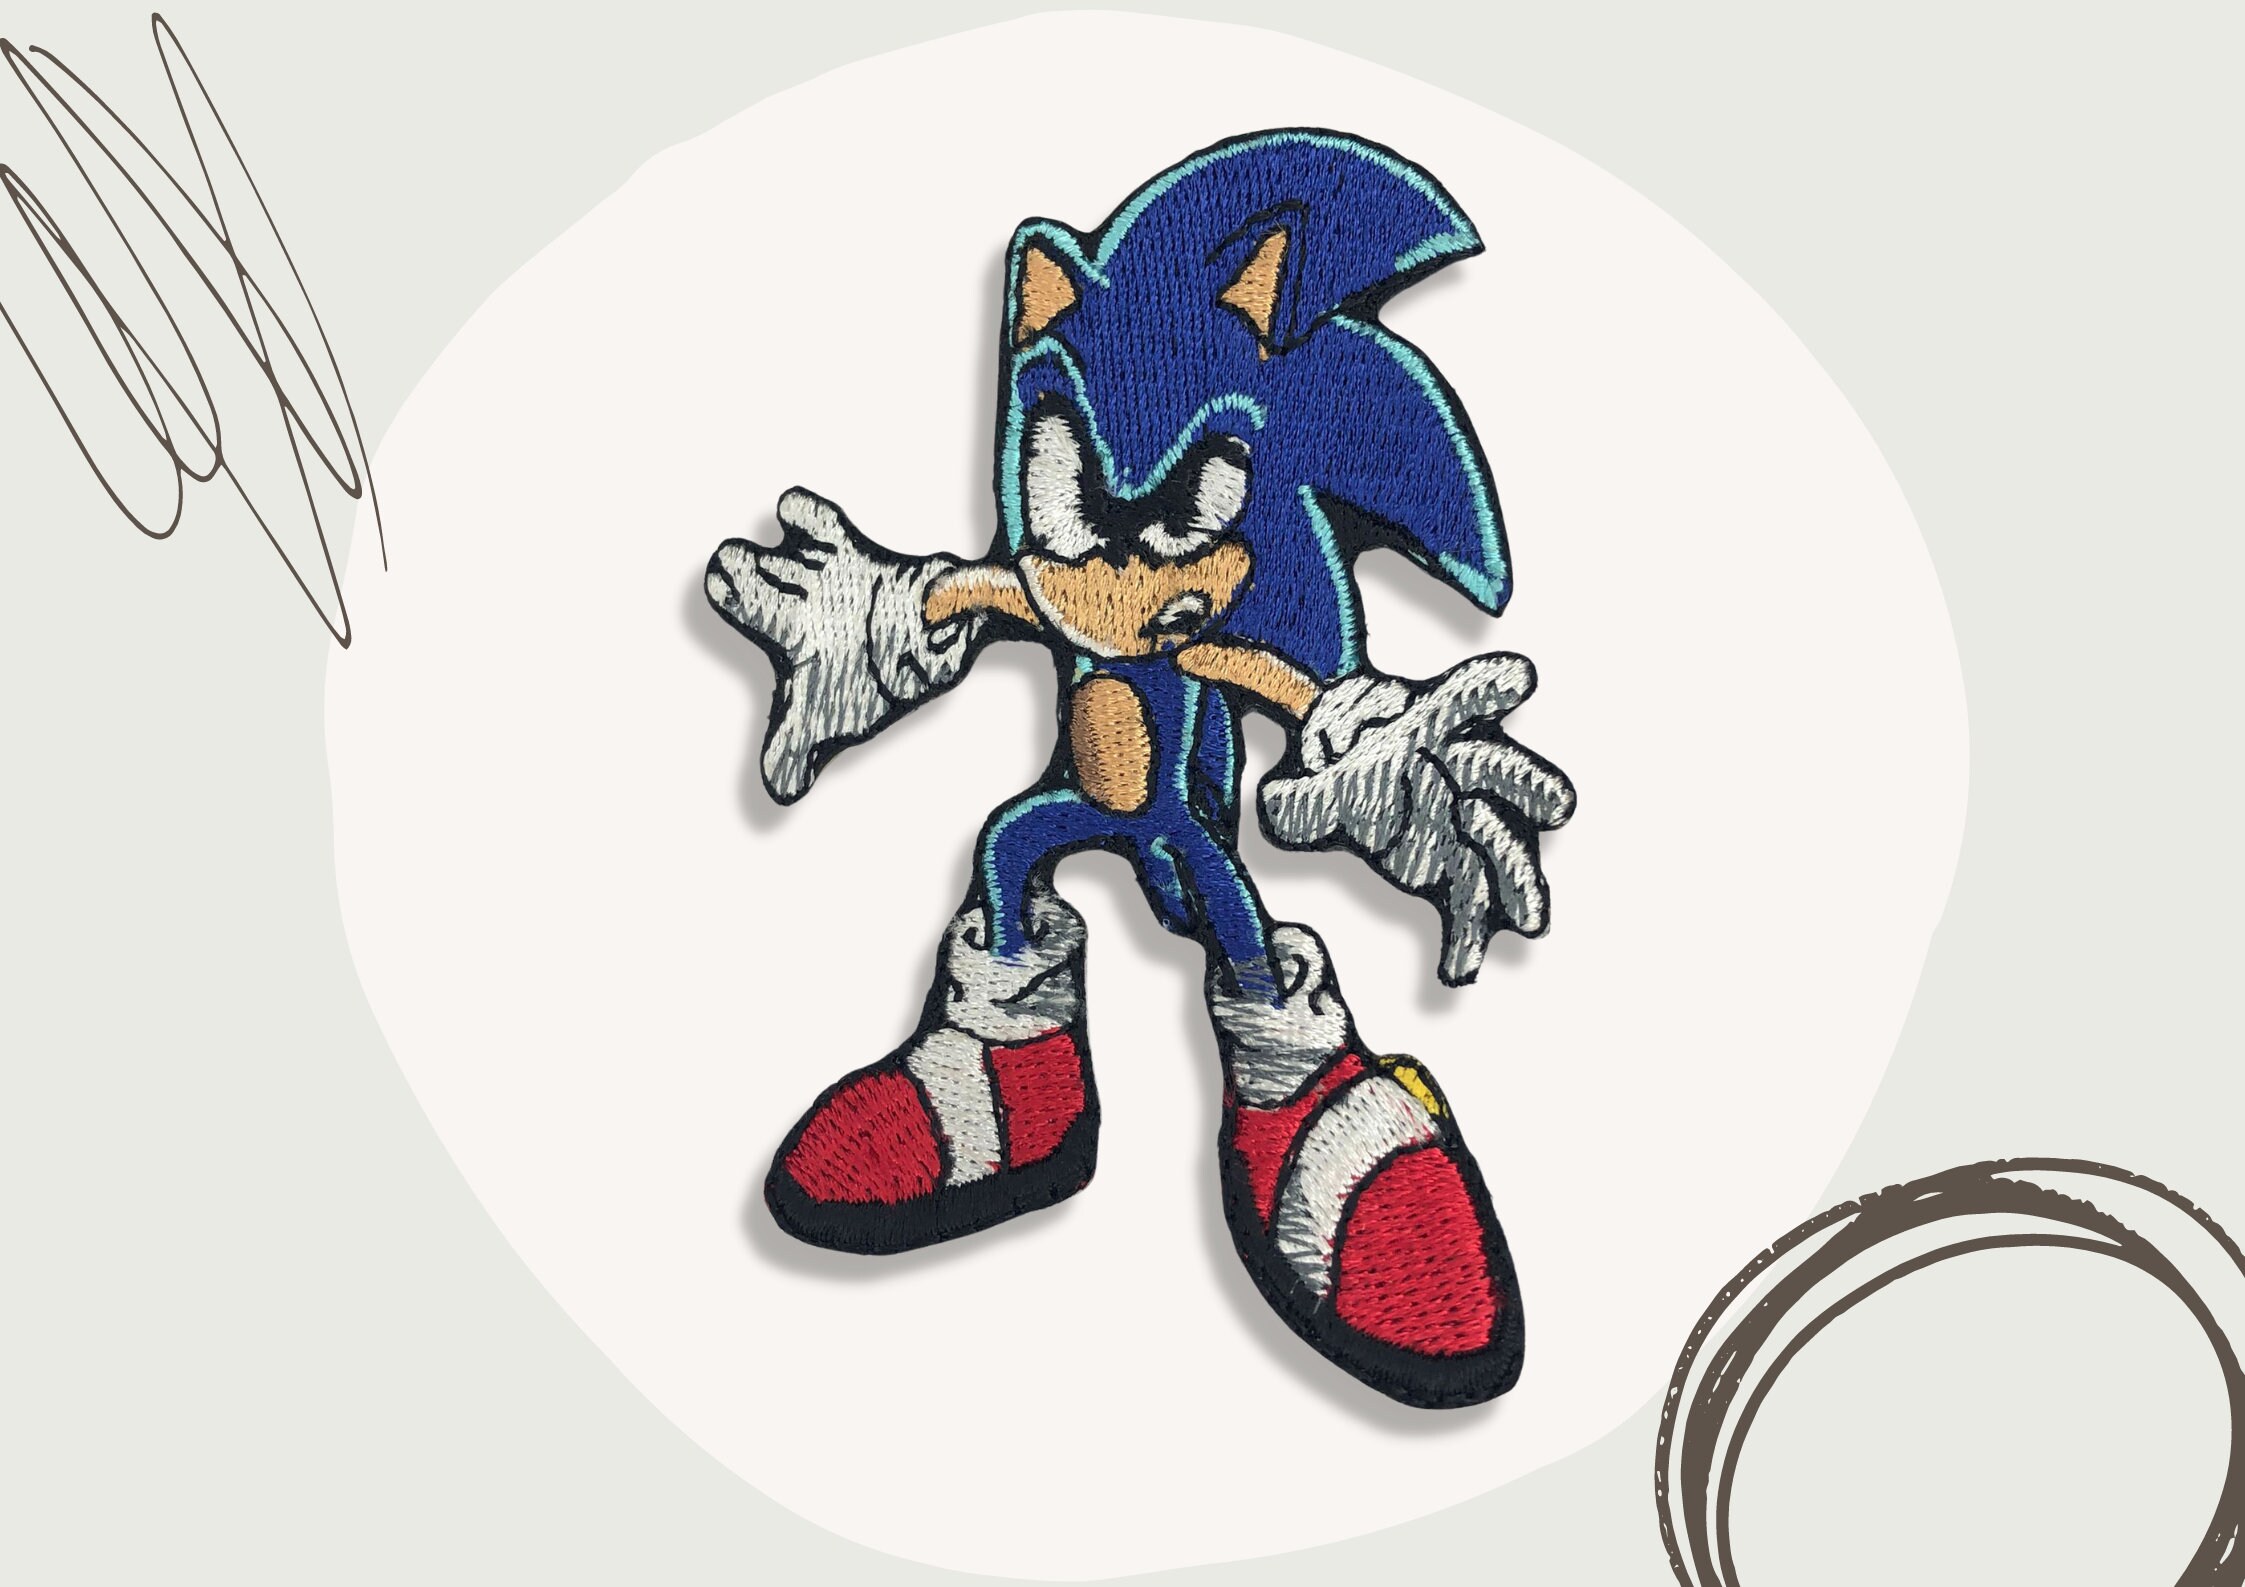 Personagem Sonic Knuckles bordado de 7,6 cm de altura com ferro no patch